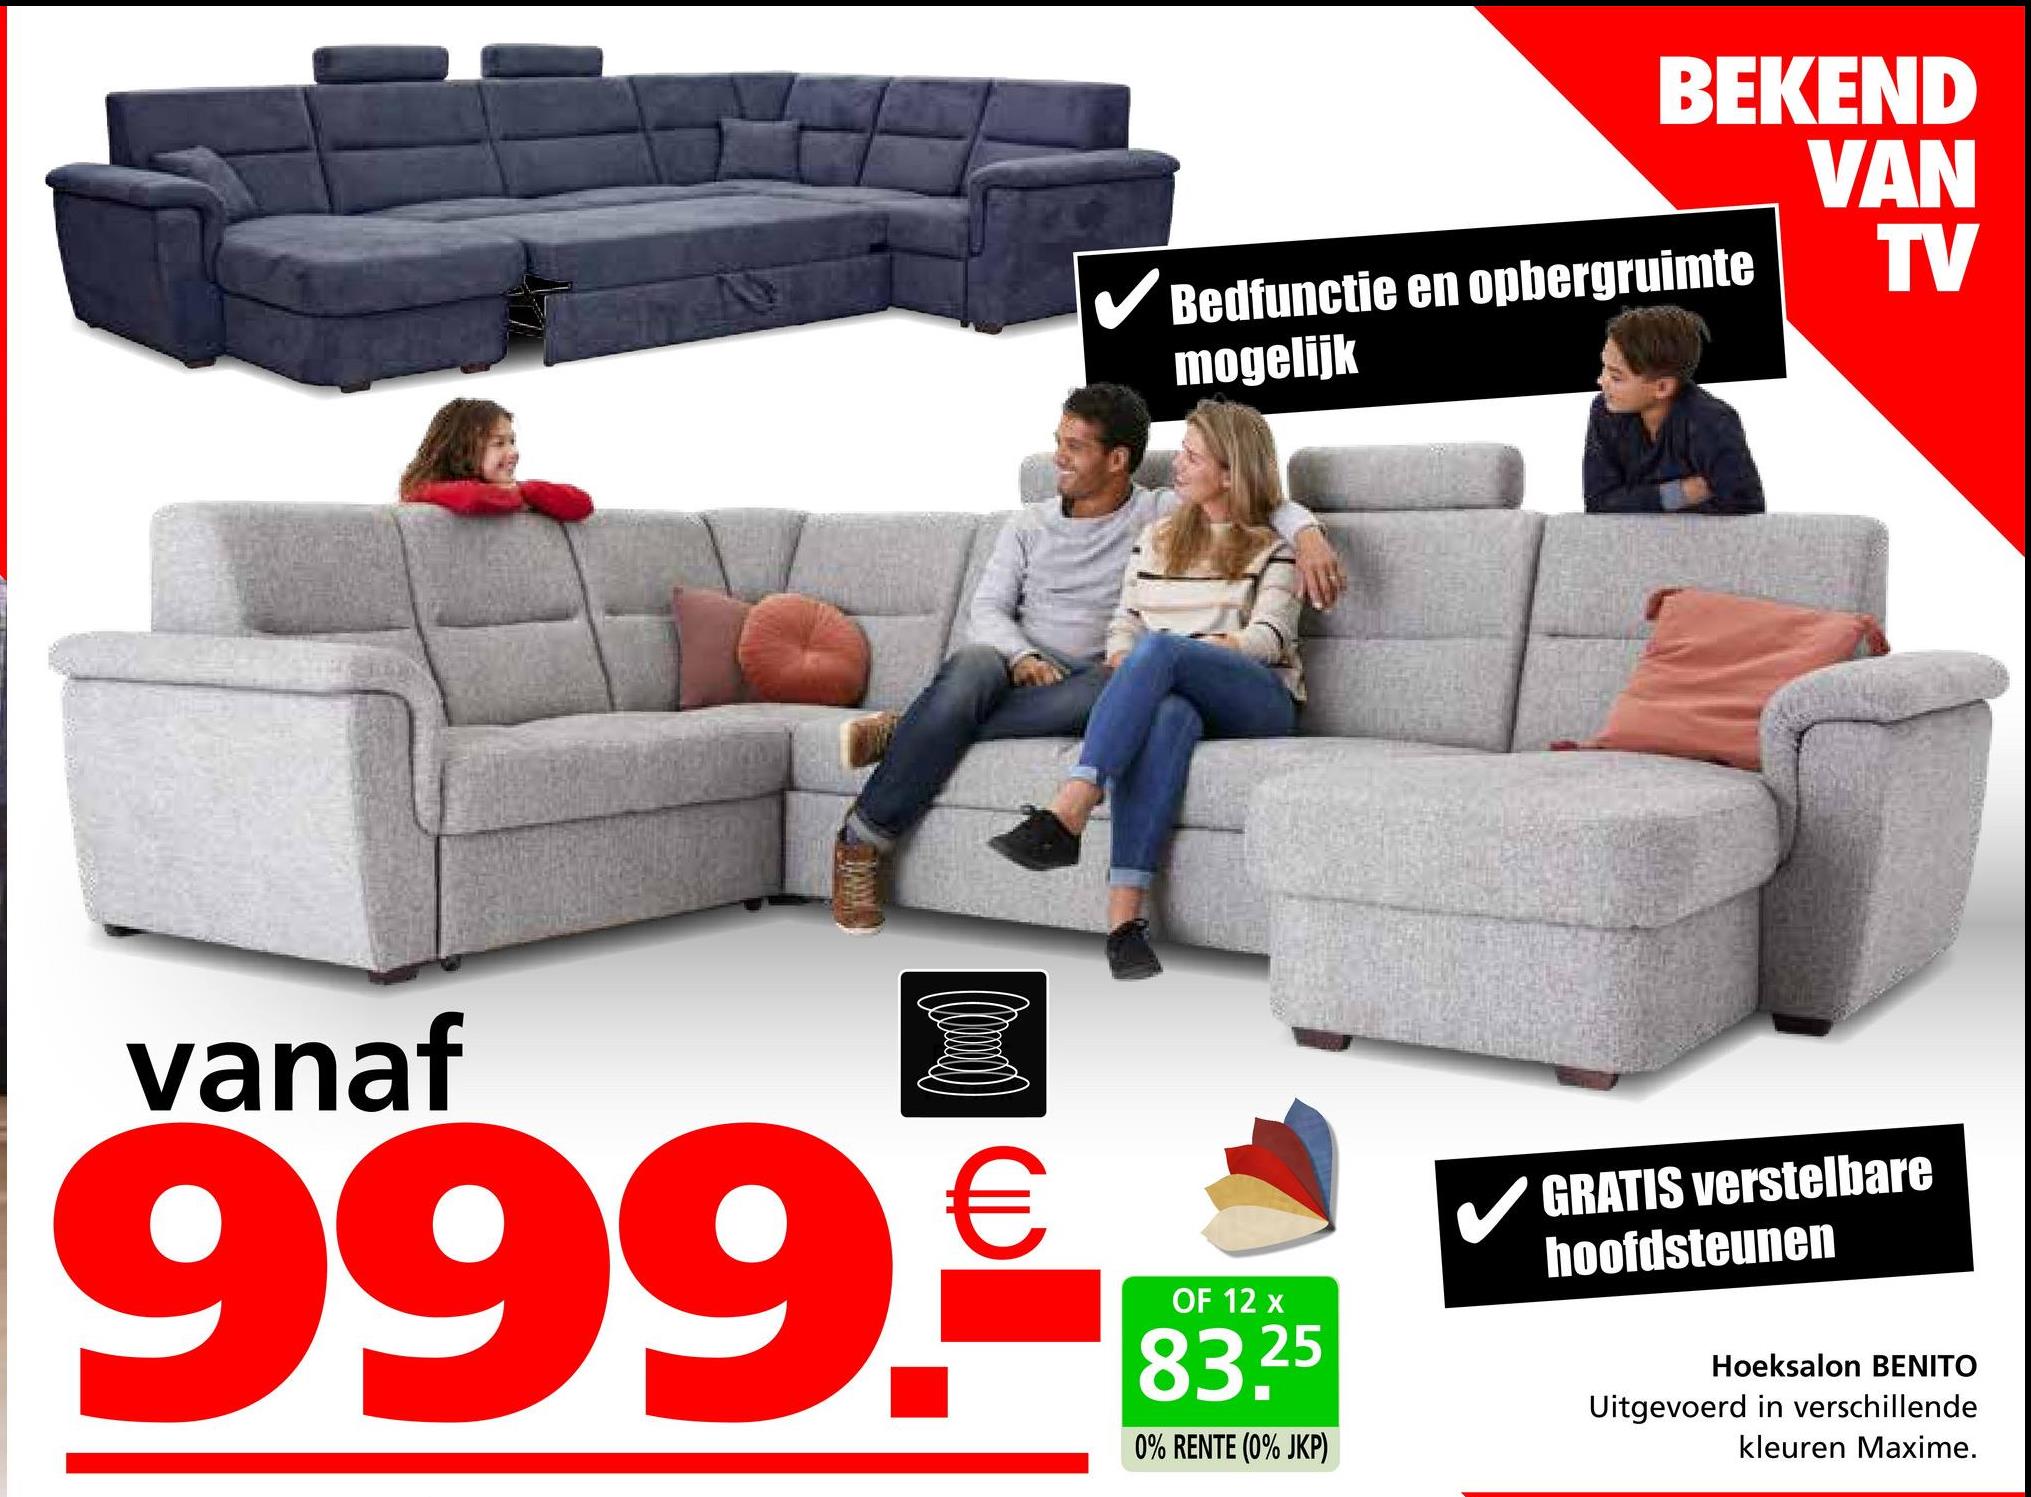 BEKEND
VAN
TV
✓ Bedfunctie en opbergruimte
mogelijk
vanaf
999.€
OF 12 x
83.25
0% RENTE (0% JKP)
GRATIS verstelbare
hoofdsteunen
Hoeksalon BENITO
Uitgevoerd in verschillende
kleuren Maxime.